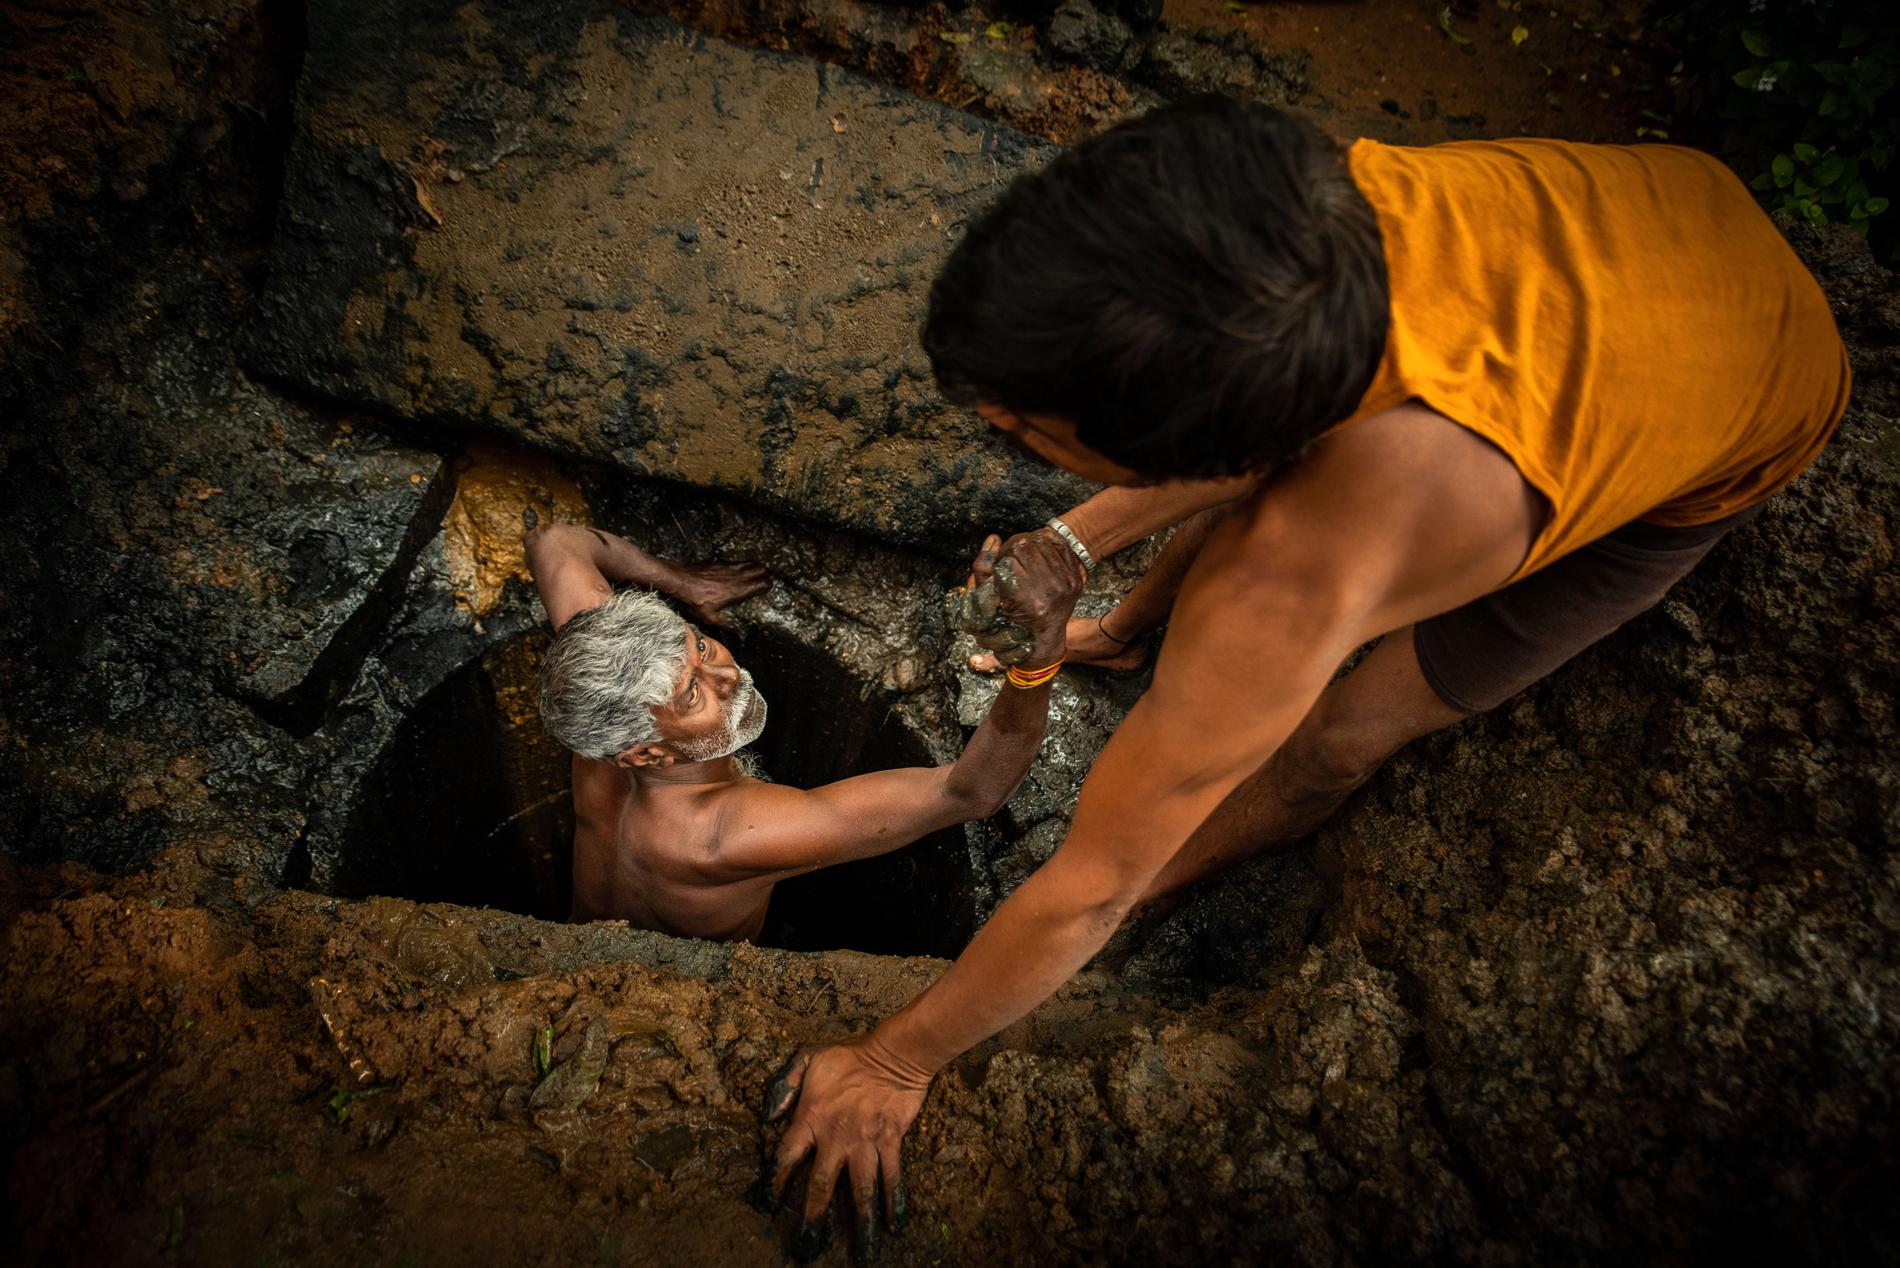 54-årige Kaverappa från Bangalore, Indien, hjälps upp ur latrinhålet han håller på att tömma av en kollega. Kaverappa har arbetat som latrintömmare i 35 år.